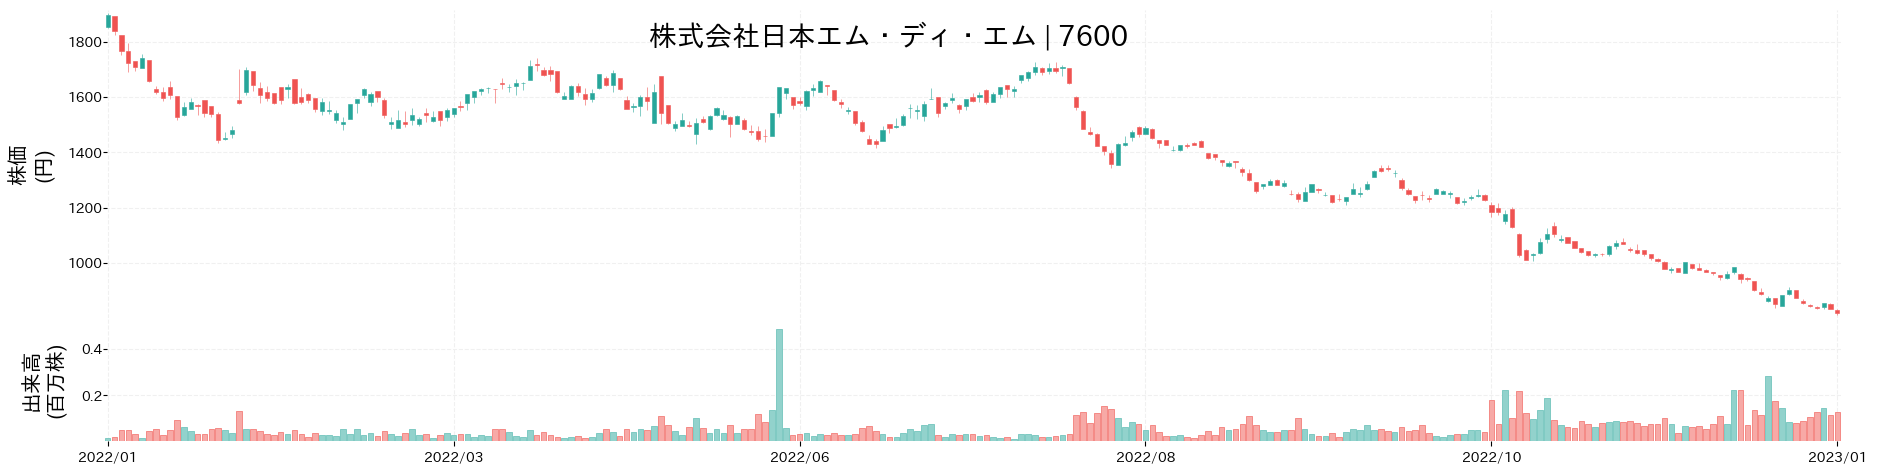 日本エム・ディ・エムの株価推移(2022)